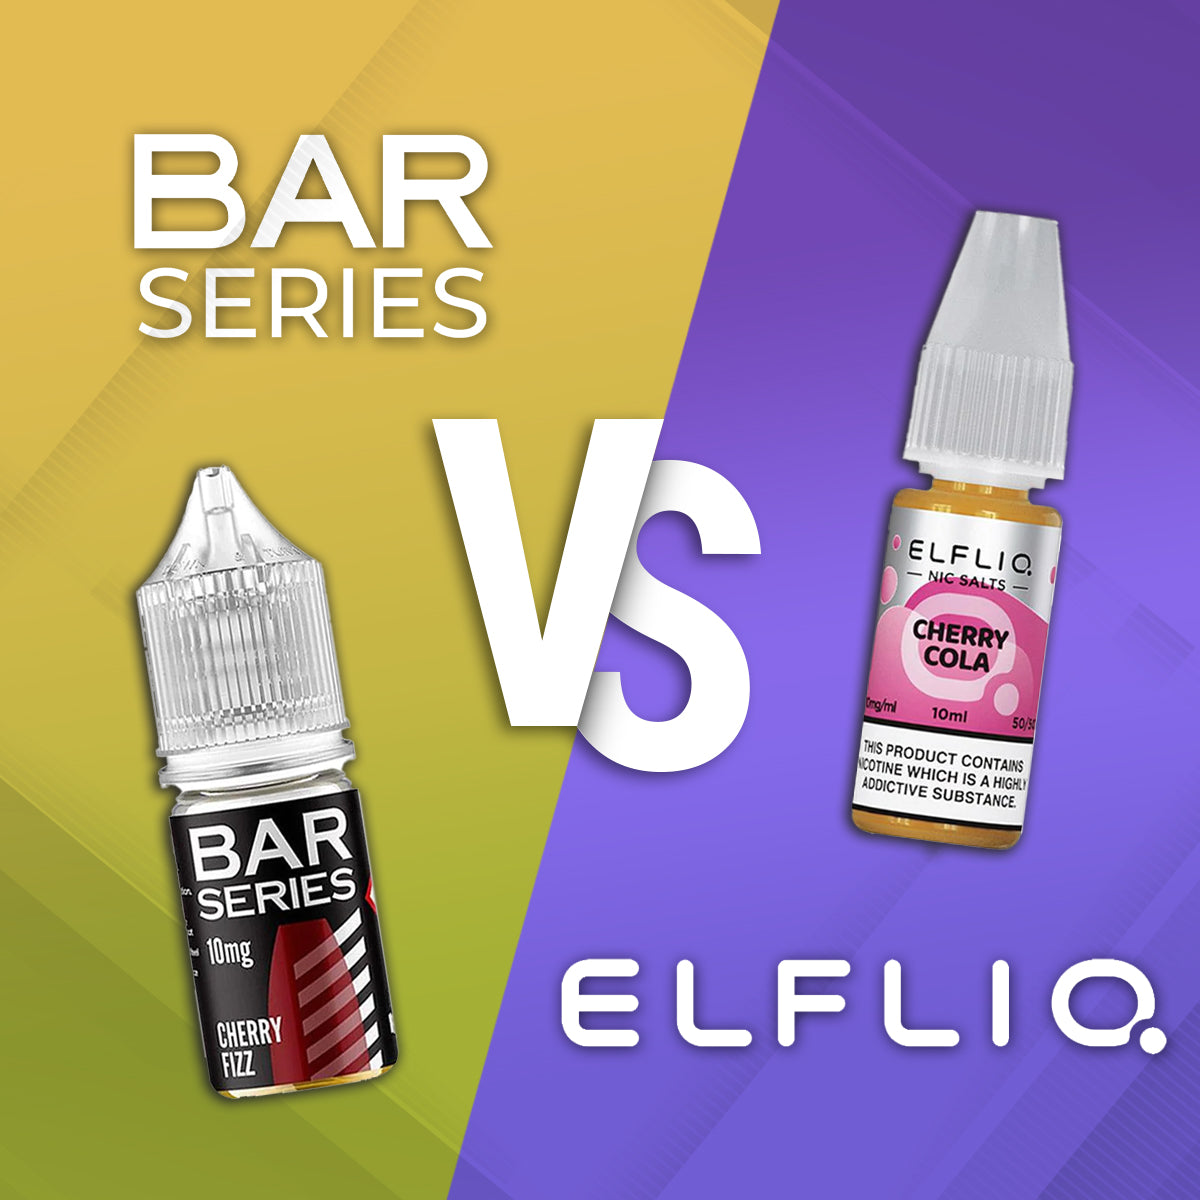 Bar Series Vs Elf Bar Elfliq E-Liquid Comparison Review